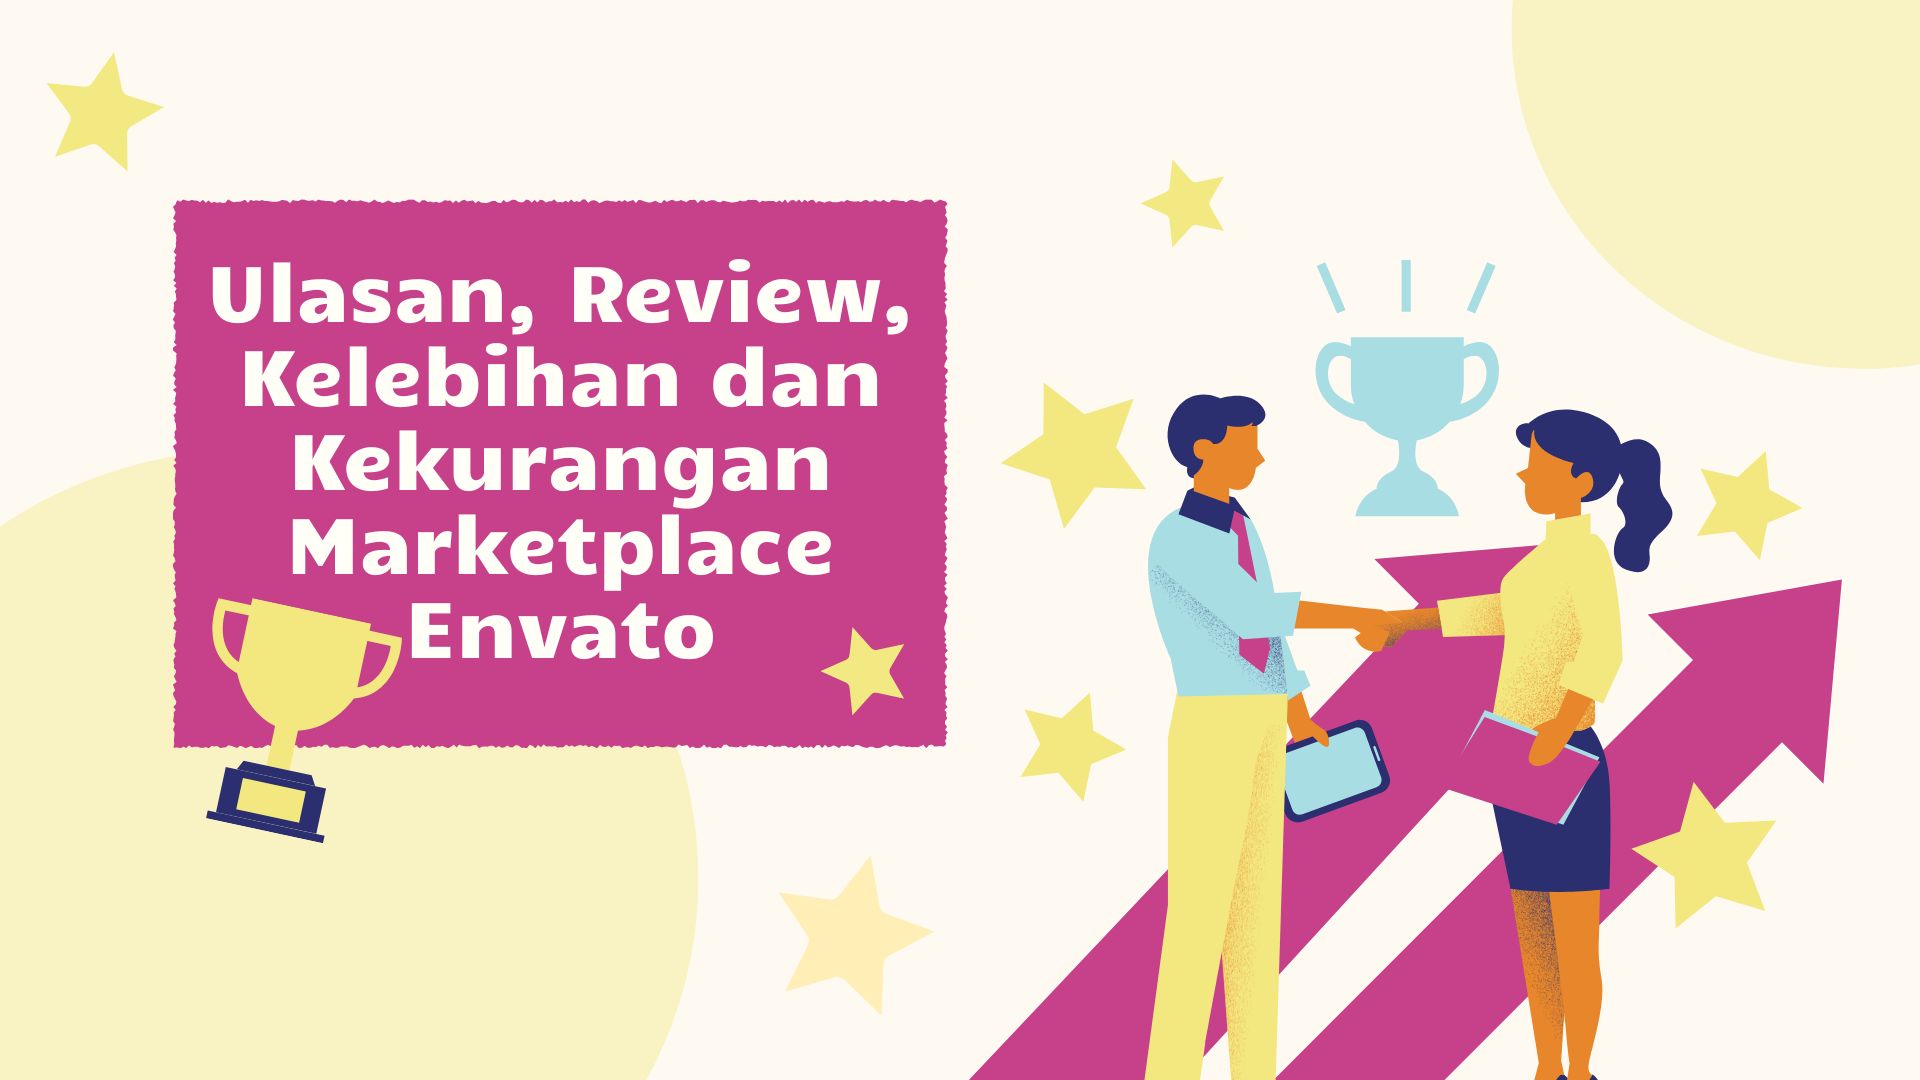 Ulasan, Review, Kelebihan dan Kekurangan Marketplace Envato